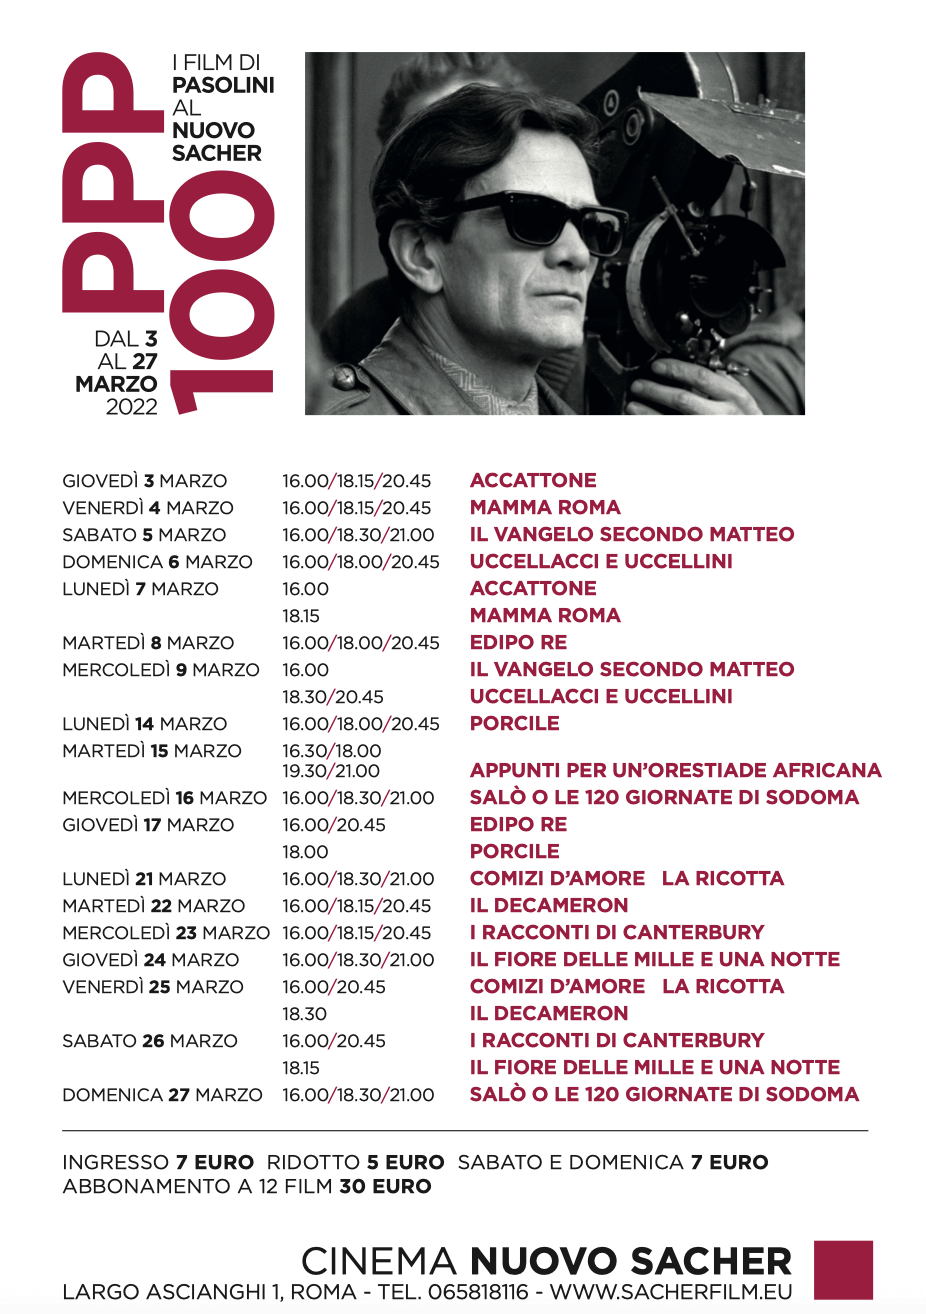 100 anni di Pier Paolo Pasolini, 13 suoi film tornano nei cinema d'Italia - Pasolini 100 - Gay.it